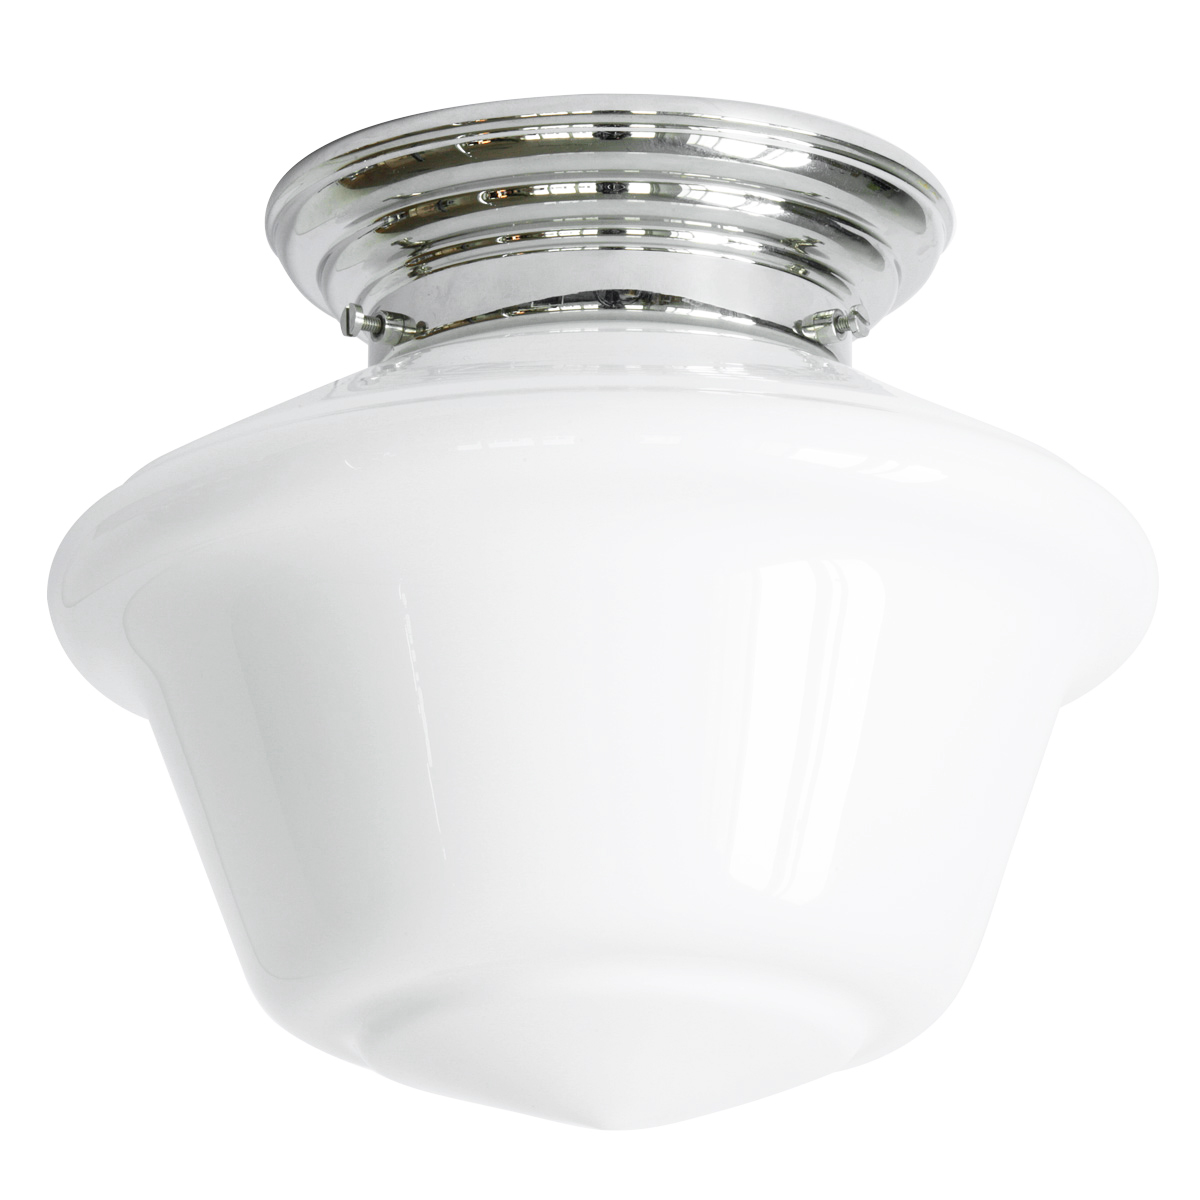 Messing-Deckenlampe mit weißem Art déco-Glas Ø 22 cm: Deckenleuchte, abgebildet mit glanzvernickeltem Deckenteil